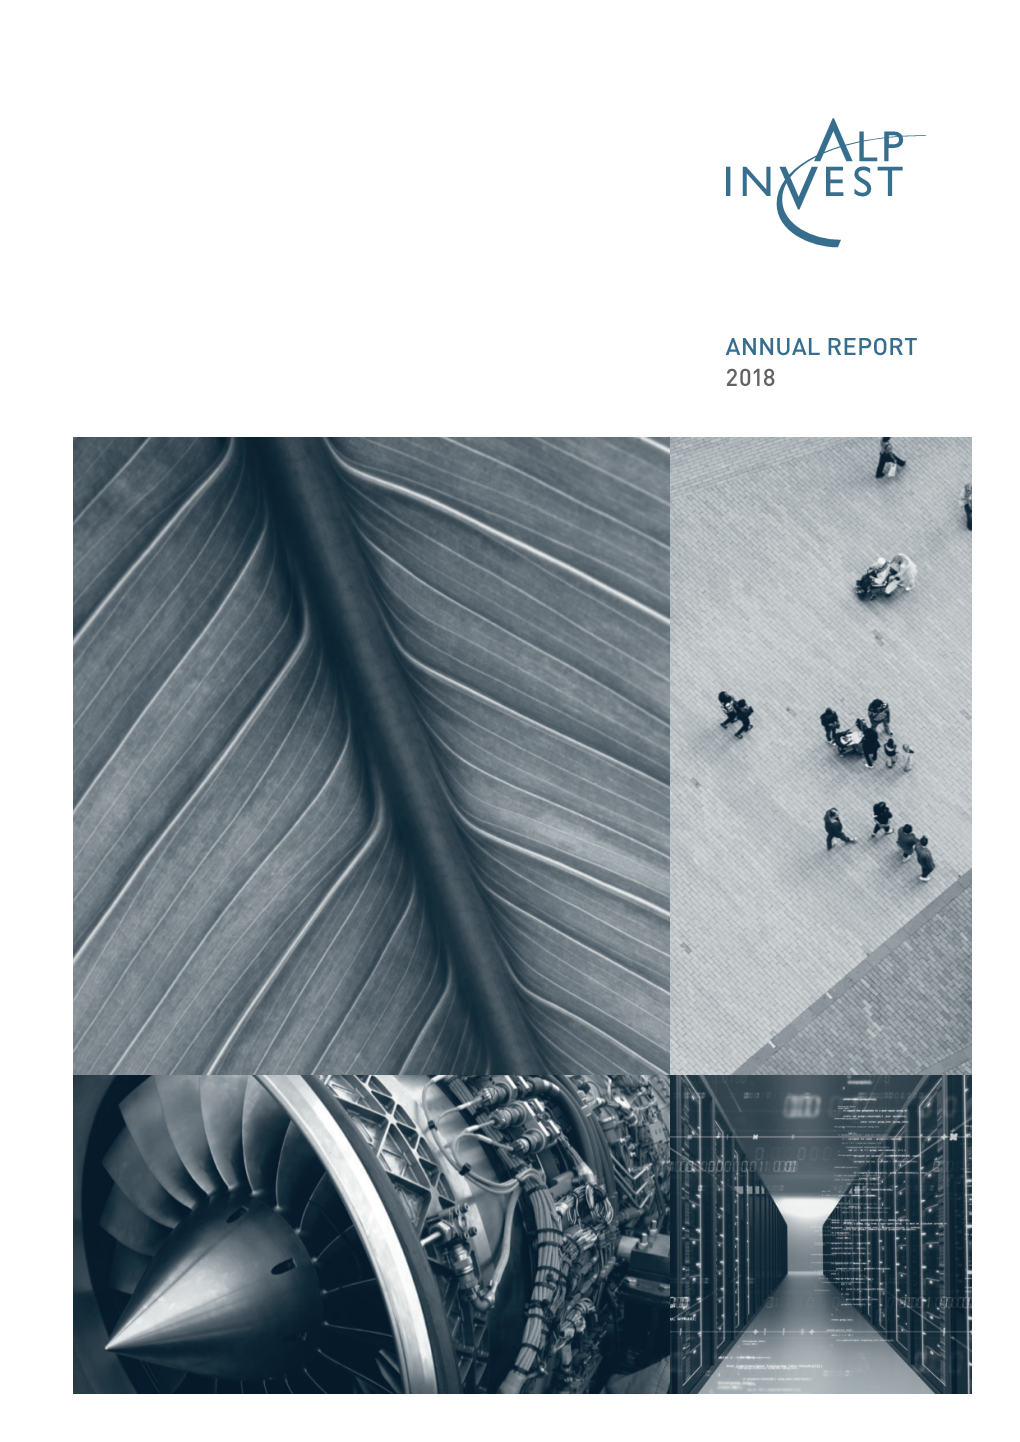 Annual Report 2018 Annual Report